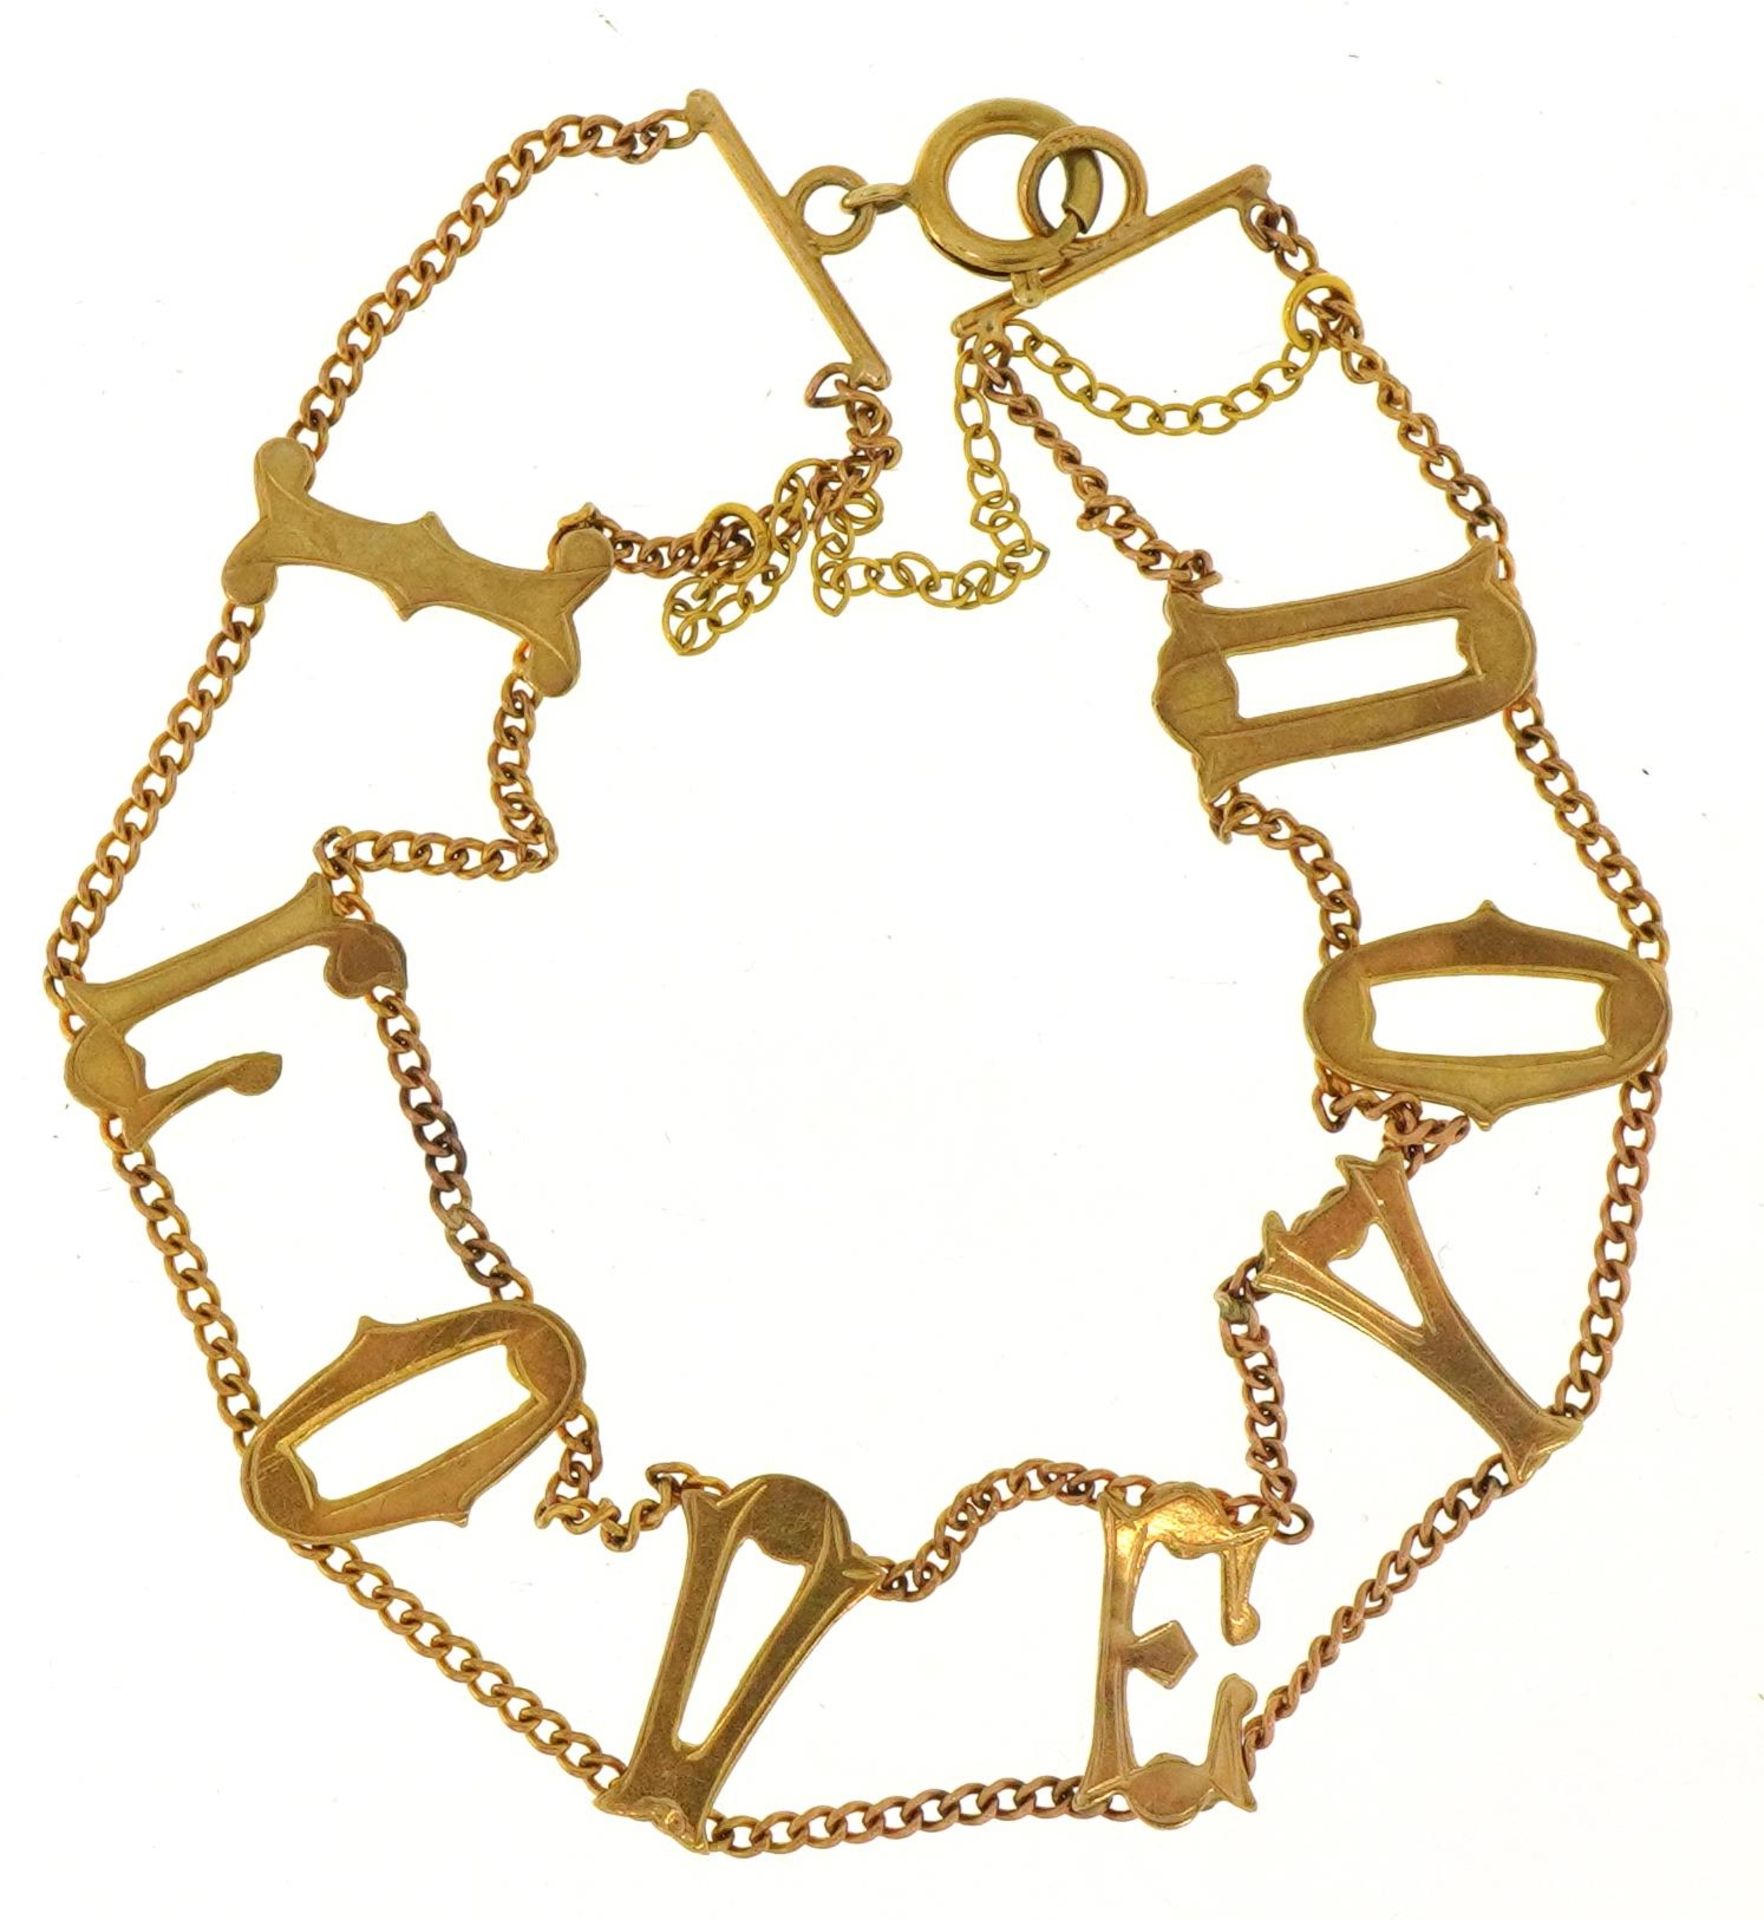 9ct gold I love you design bracelet, 18cm in length, 4.8g - Image 2 of 4